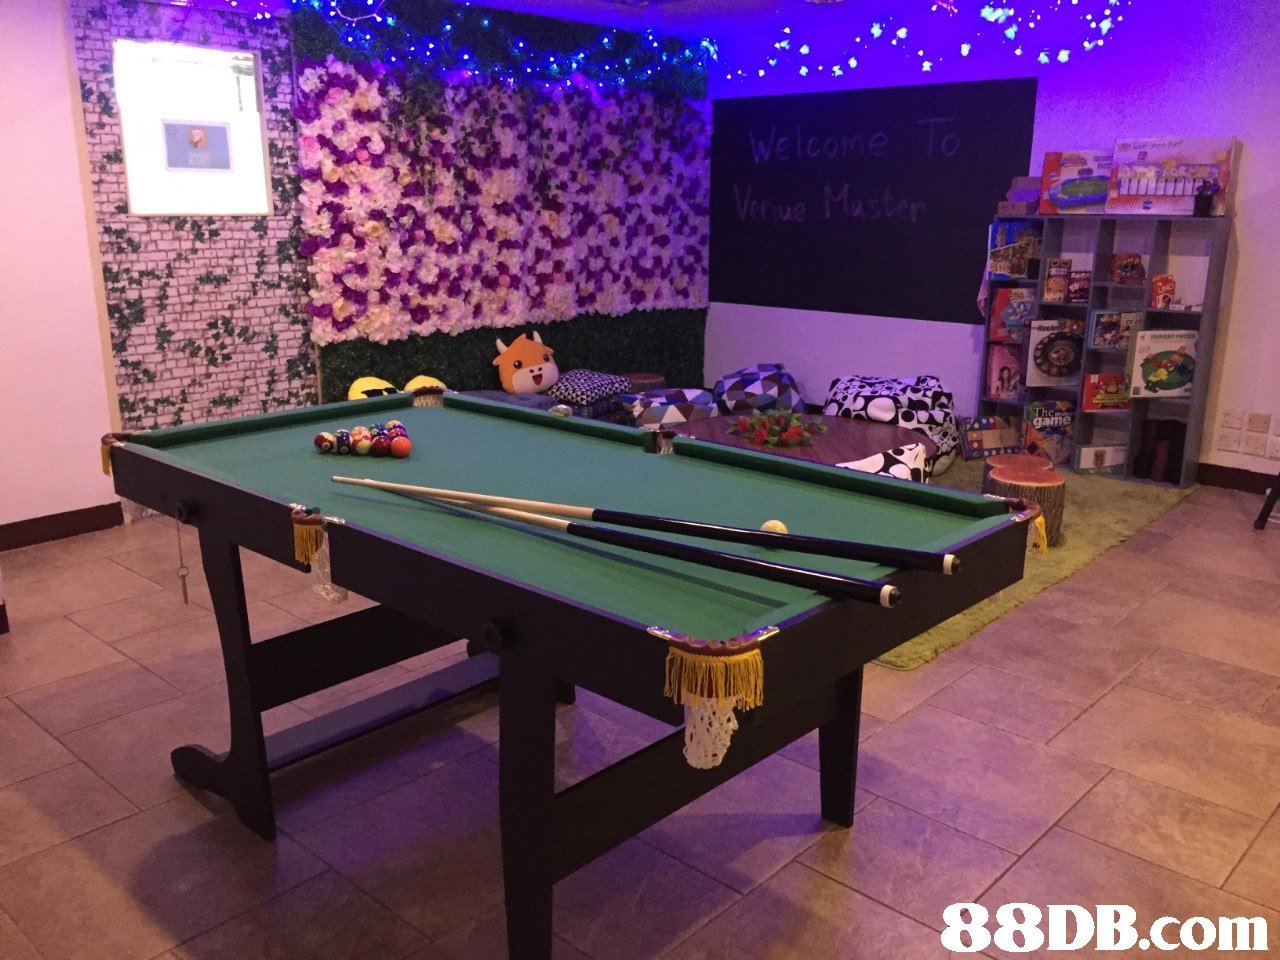   billiard room,billiard table,recreation room,snooker,table